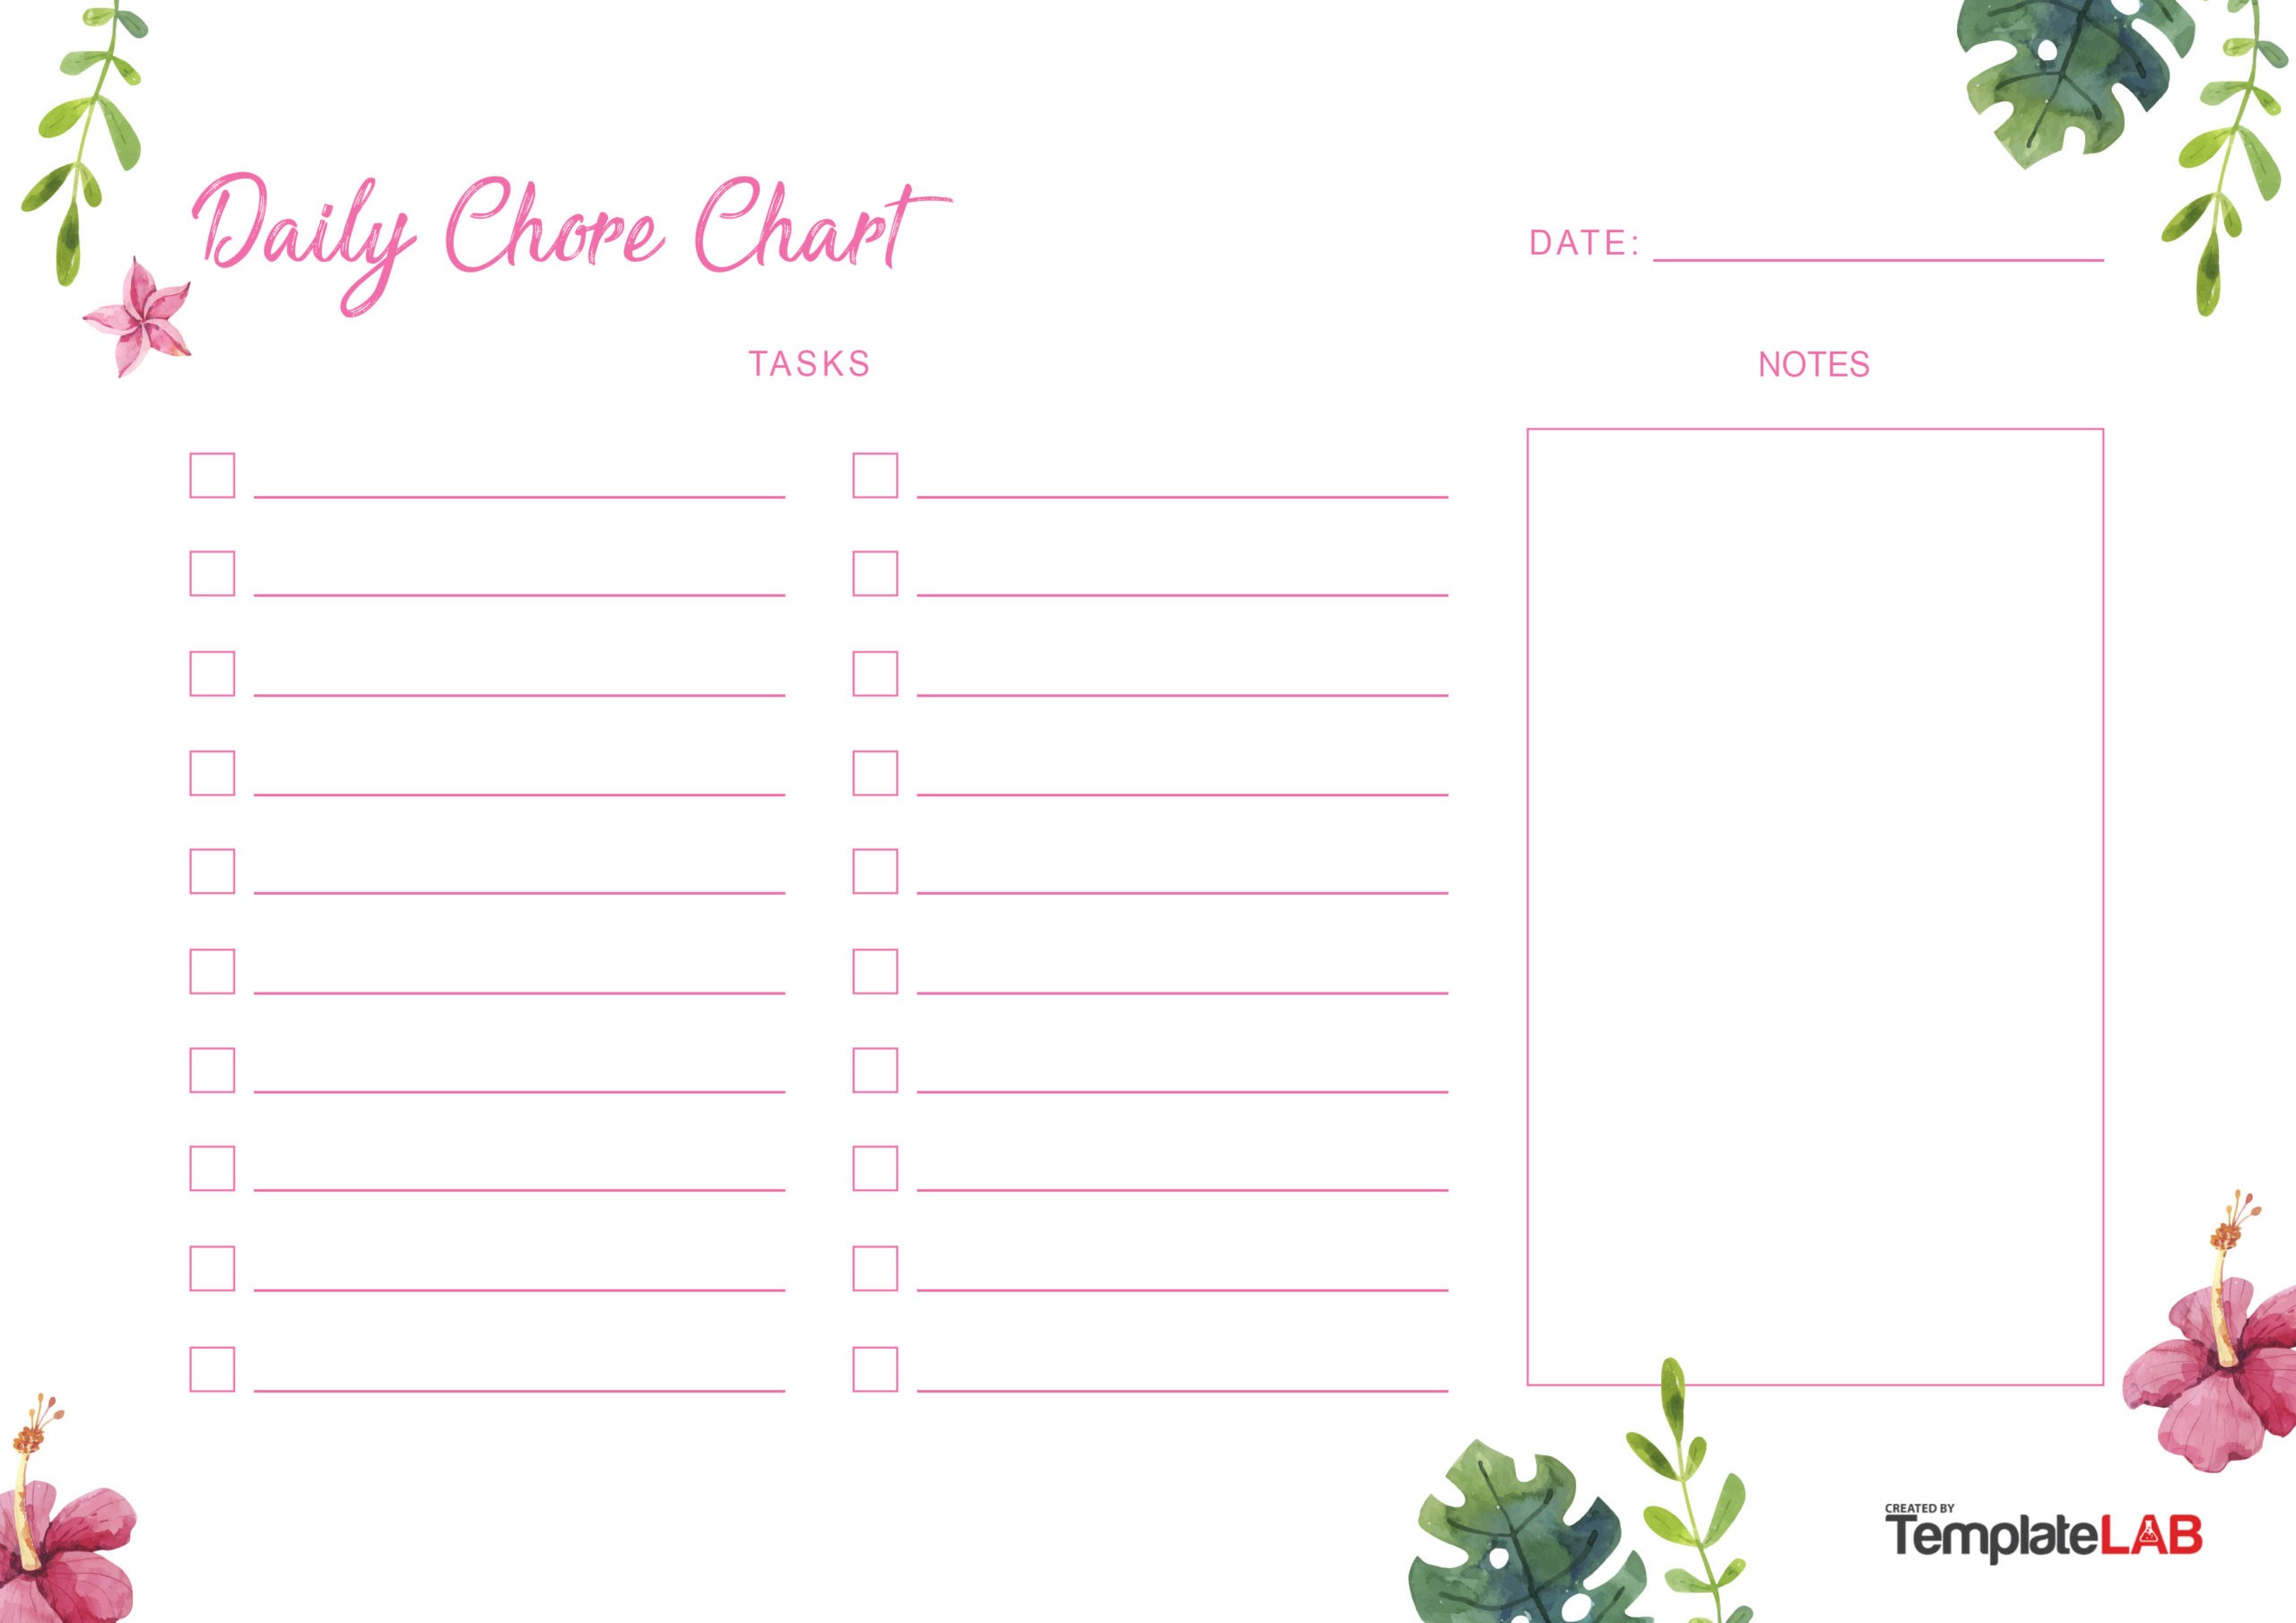 Free Daily Chore Chart v2